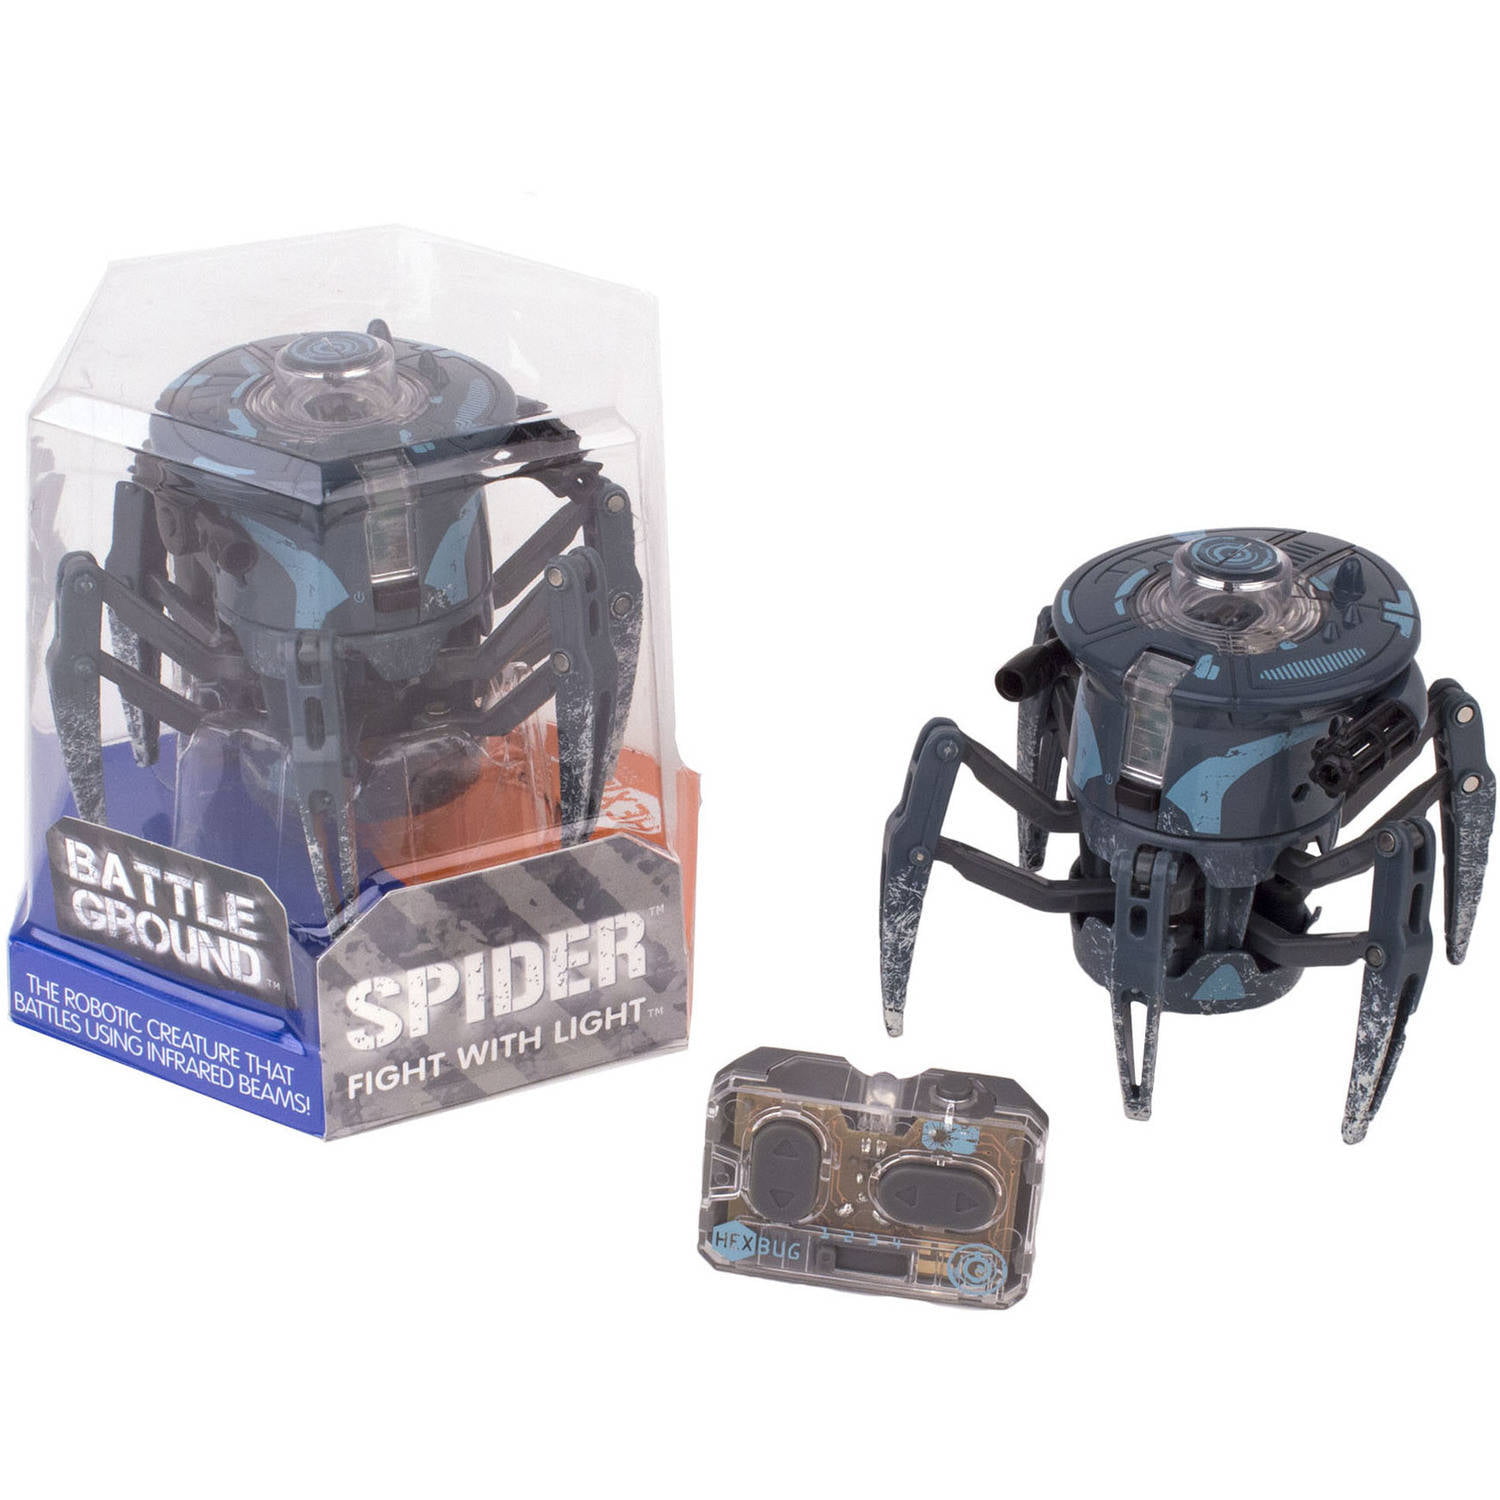 Микроробот Спайдер. Hexbug Battle Spider. Робот Hexbug набор Battle Spider 2. Микроробот "боевой ринг рейсер". Камера спайдер 2.0